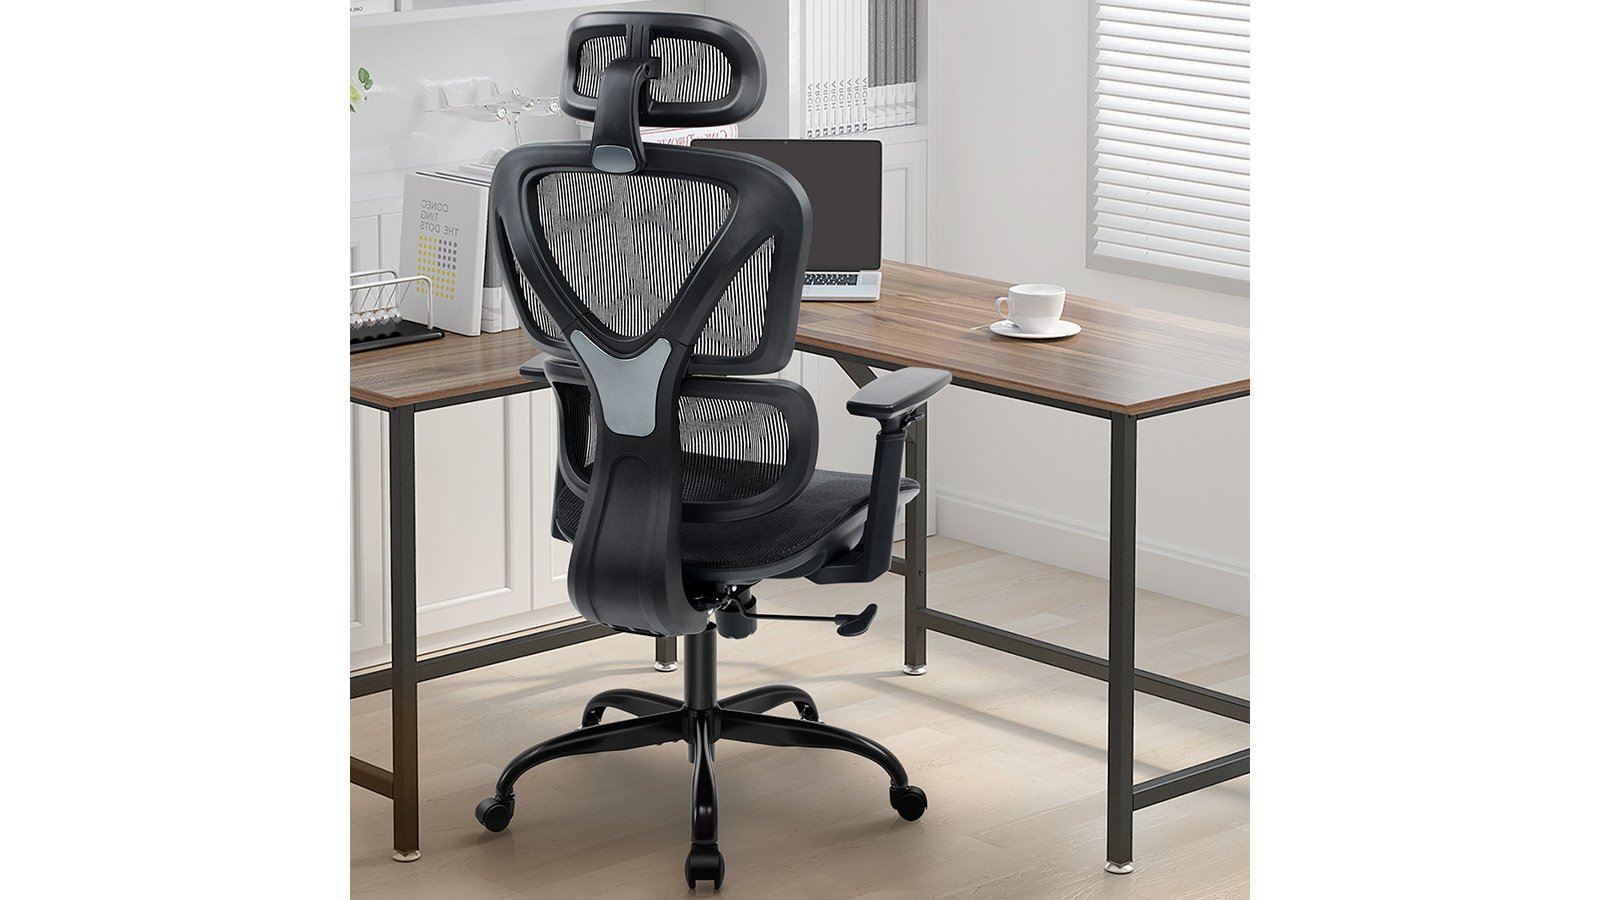 Ergonomic Chair: Breathable Mesh Cushion